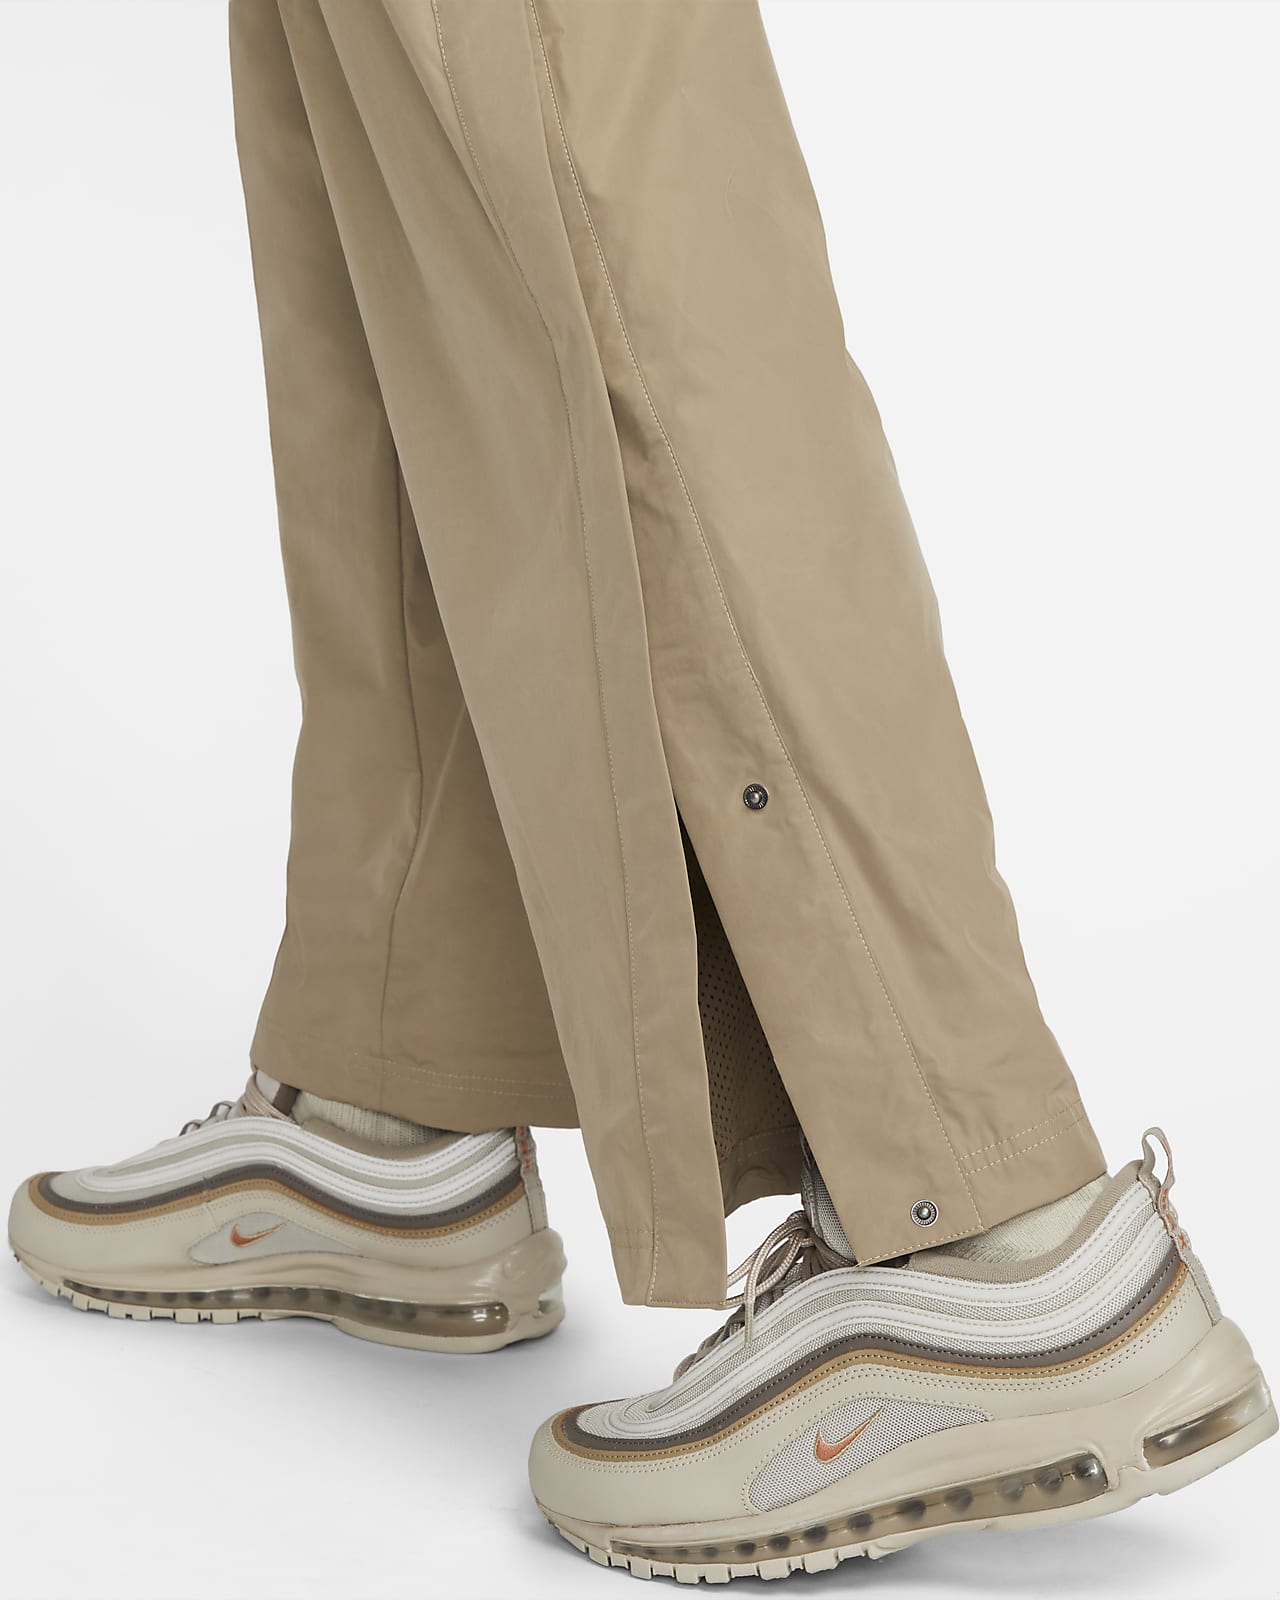 Tear Away Pants In Men's Pants for sale | eBay